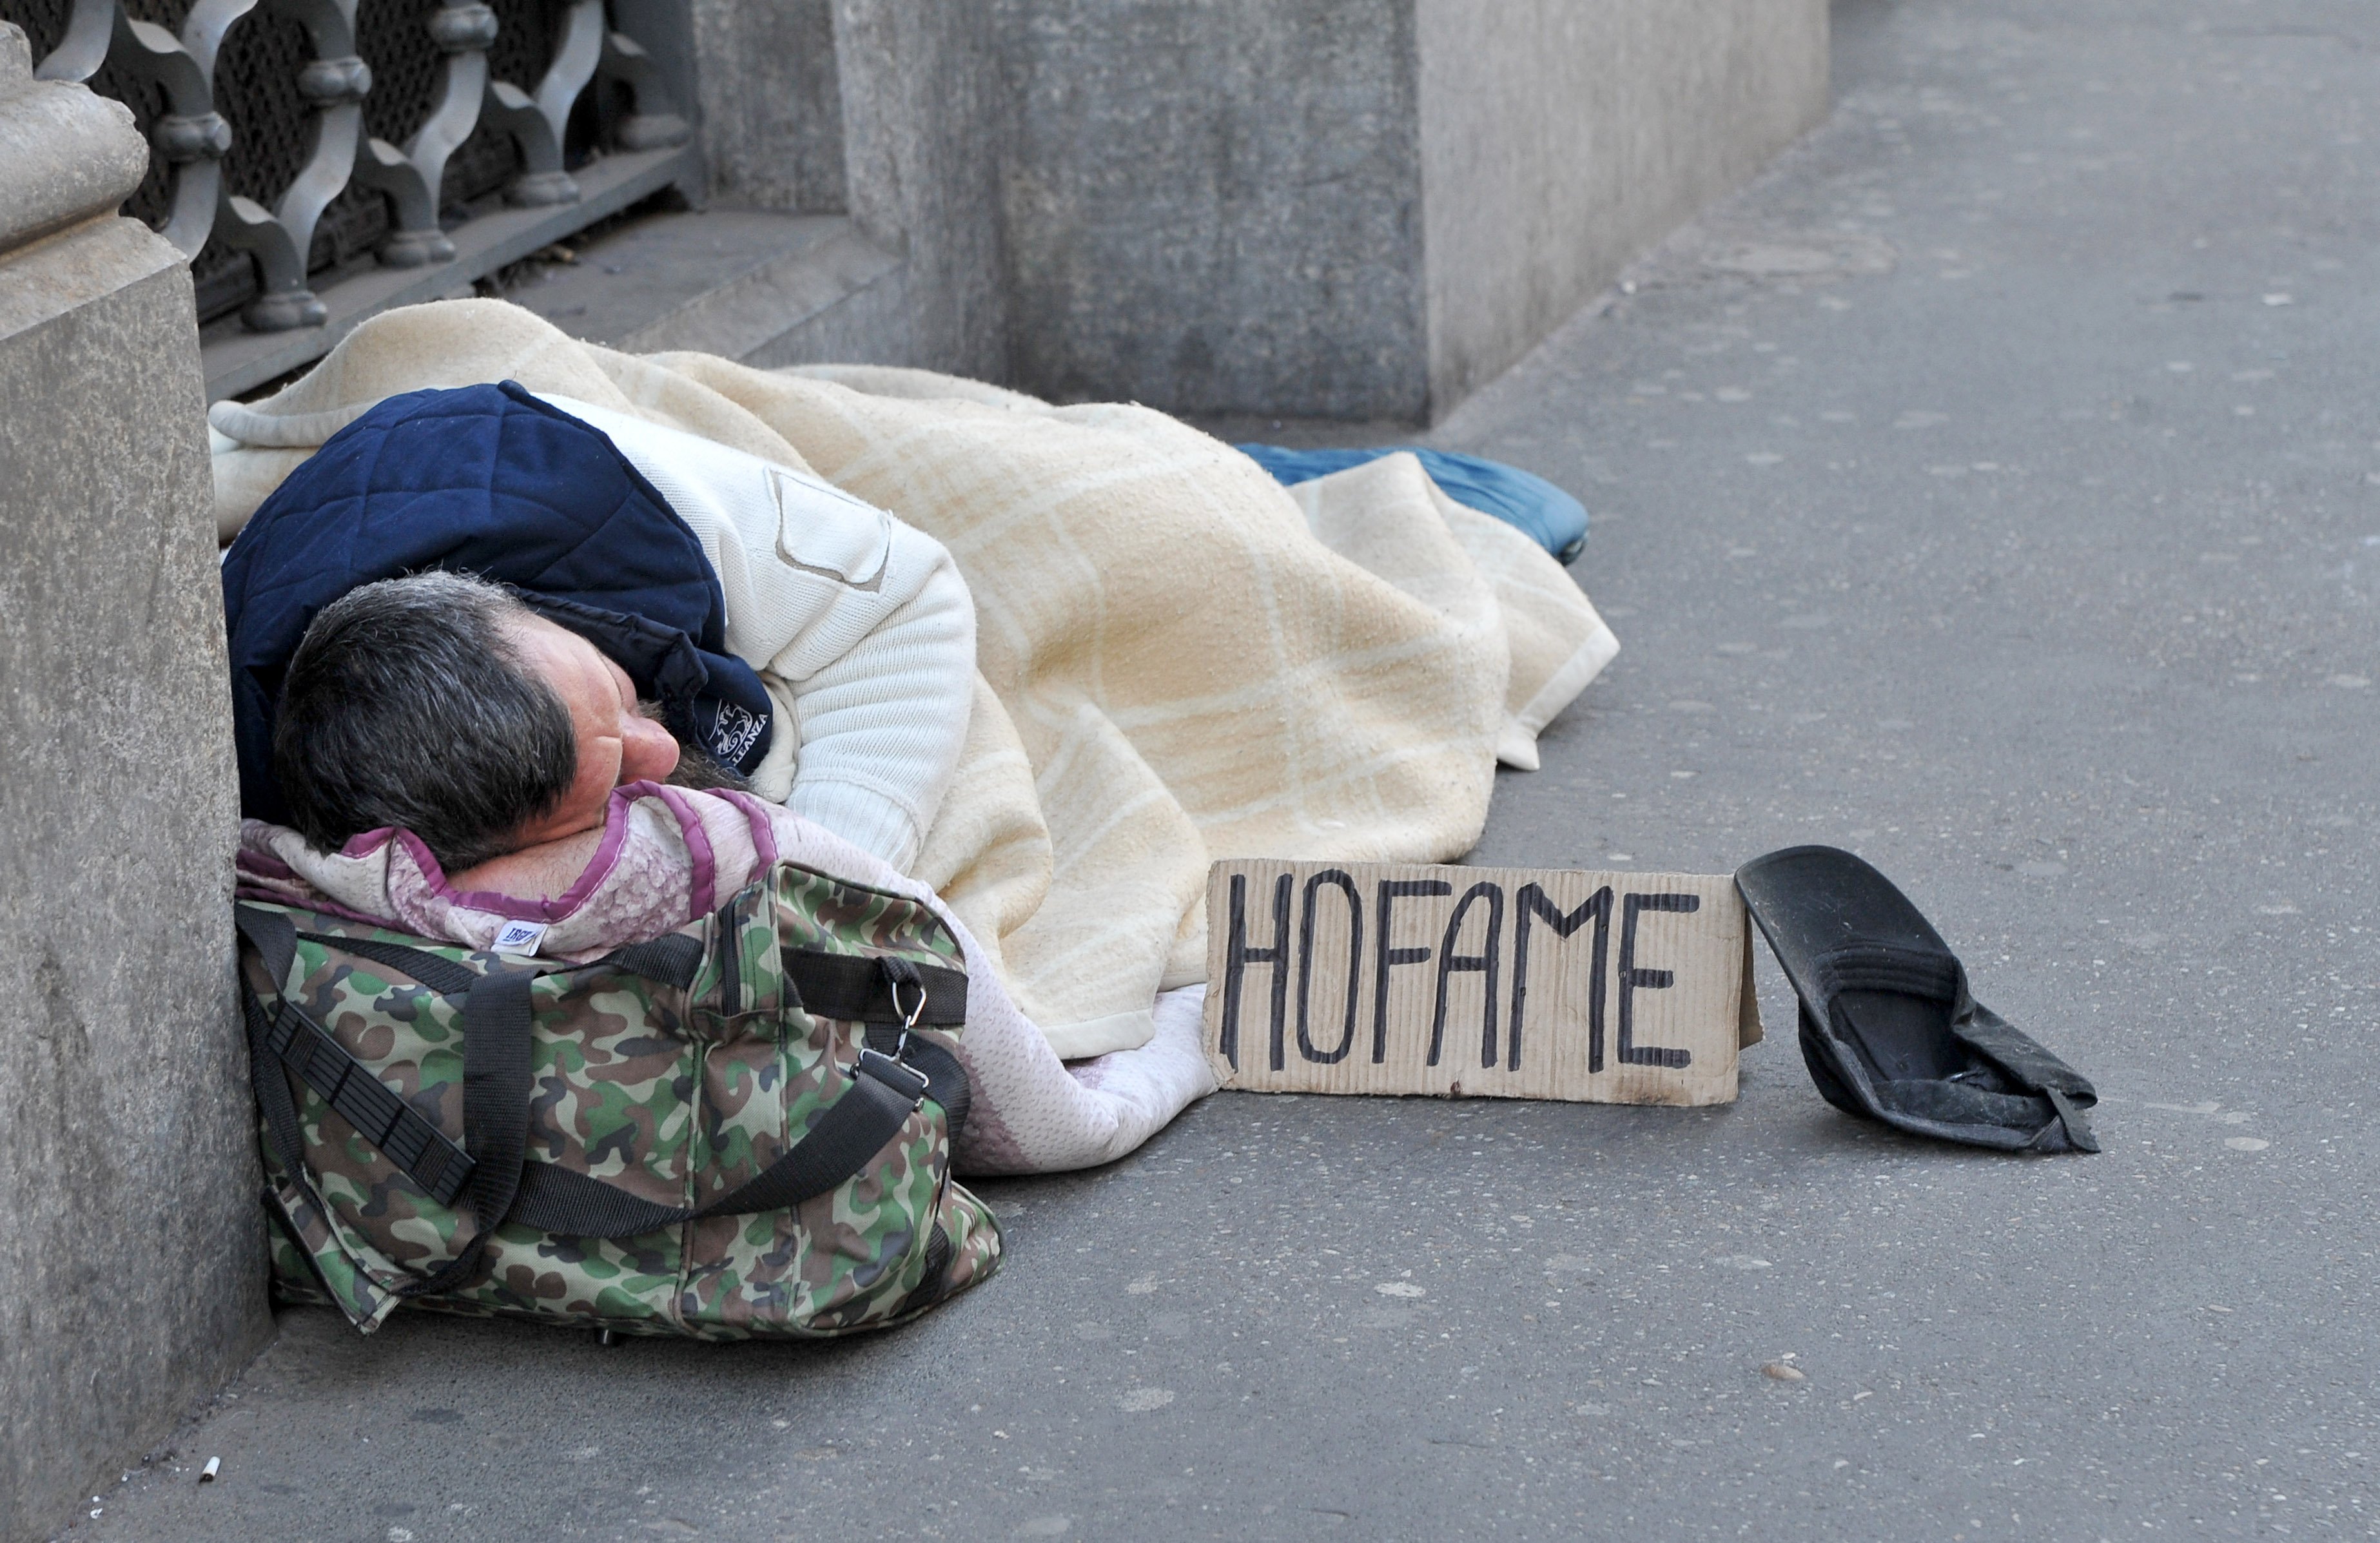 clochard senza fissa dimora homeless povero povertà